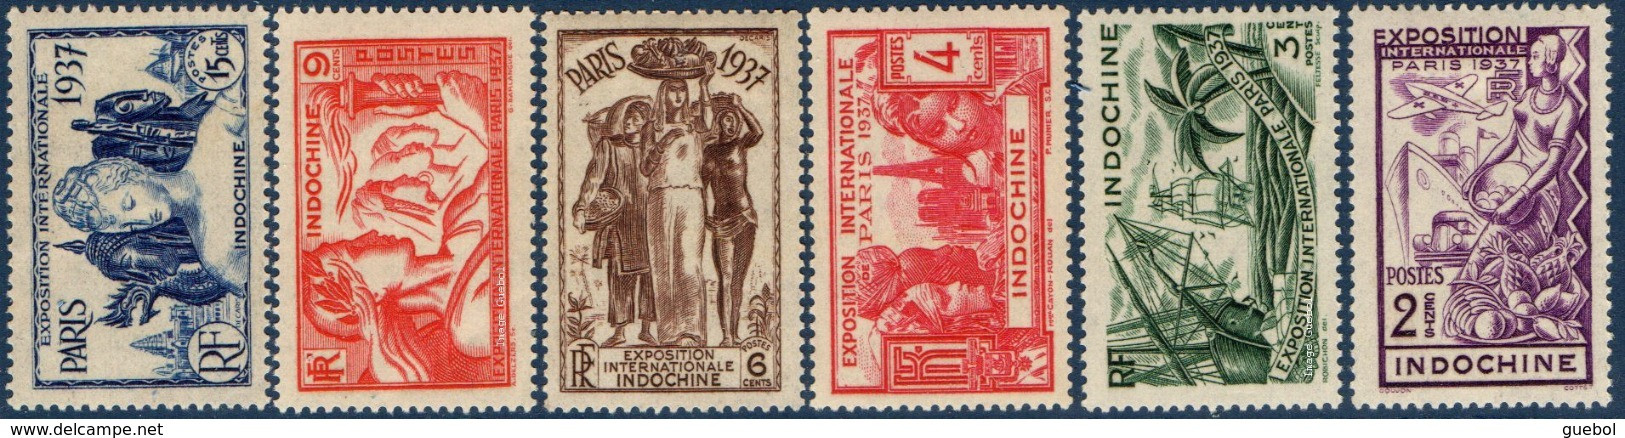 Détail De La Série Exposition Internationale De Paris * Indochine N° 193 à 198 - 1937 Exposition Internationale De Paris